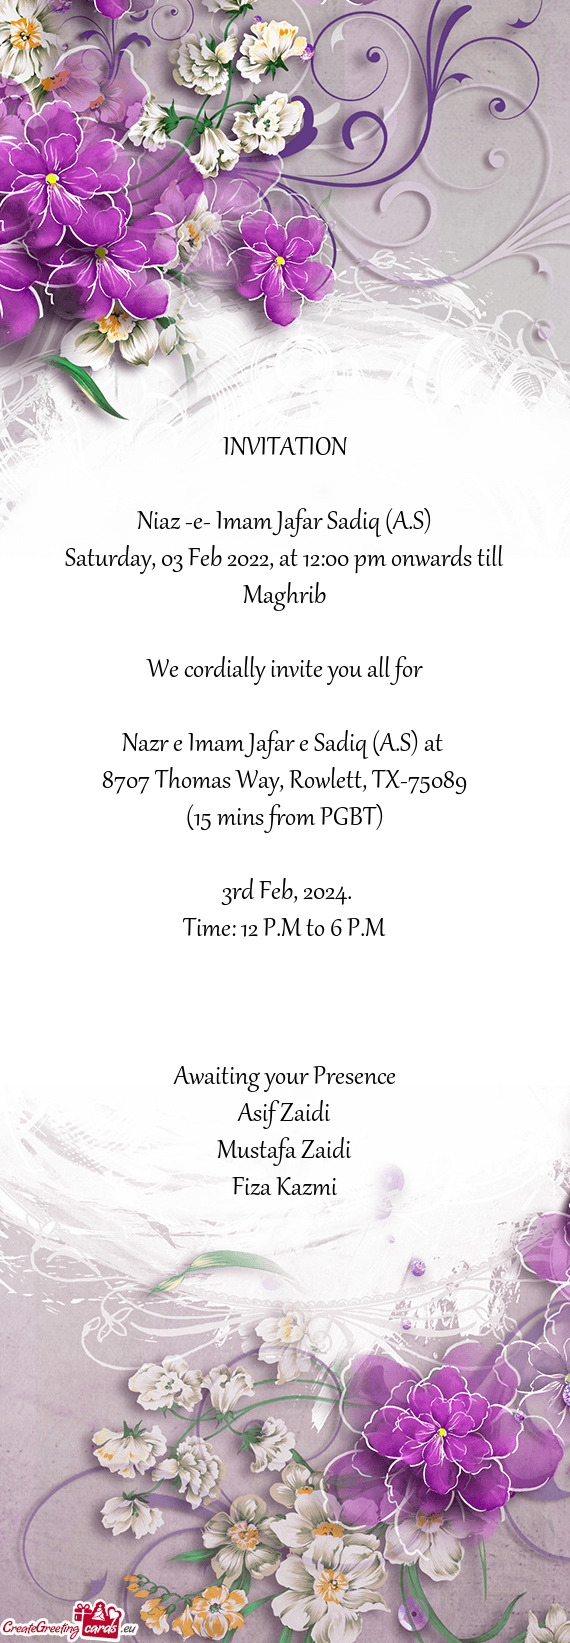 Saturday, 03 Feb 2022, at 12:00 pm onwards till Maghrib